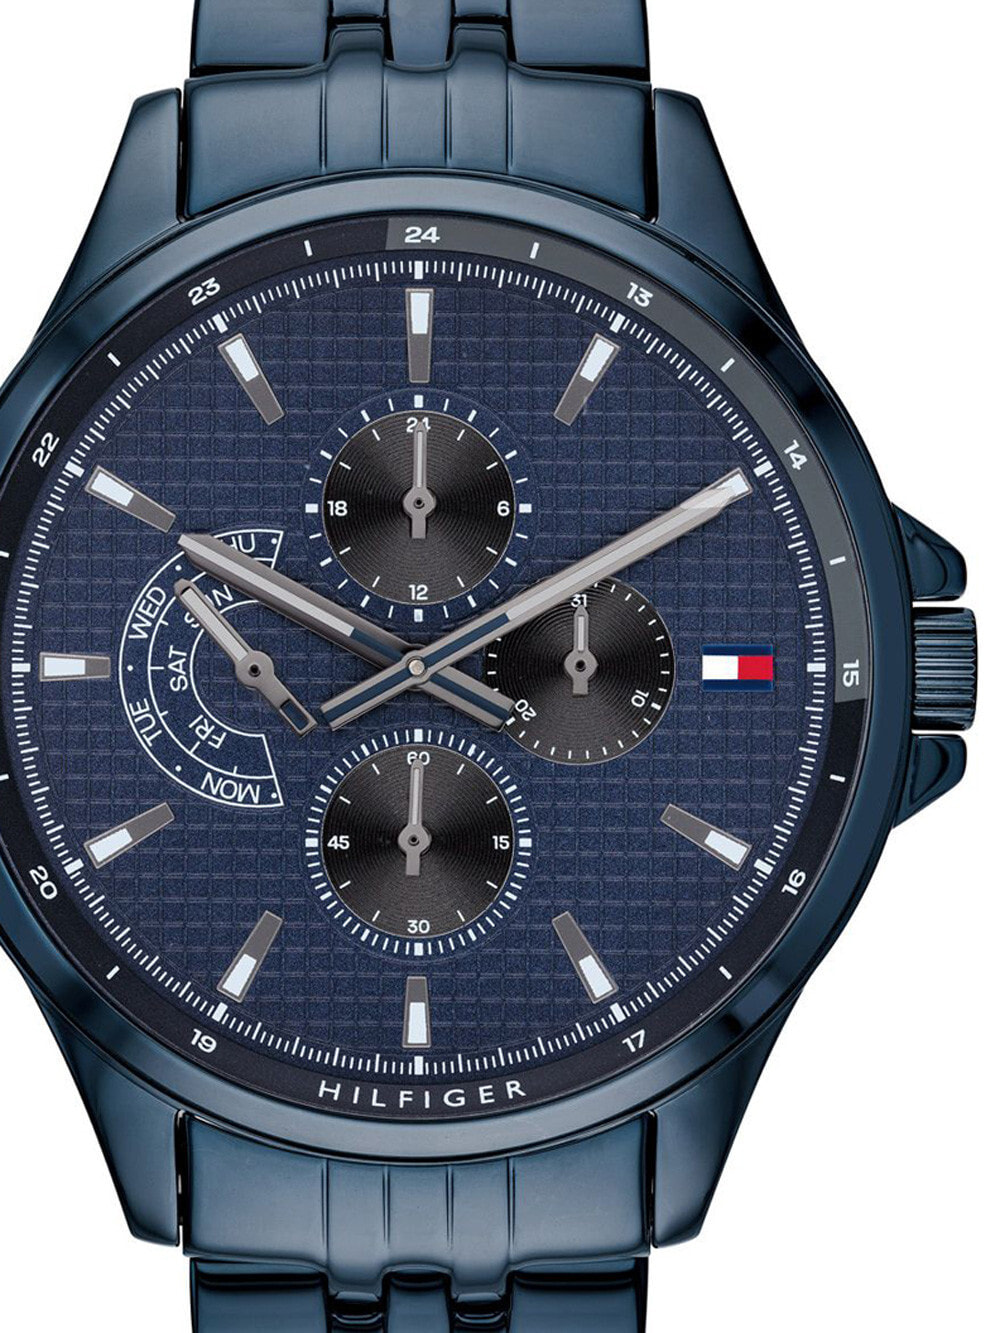 Мужские наручные часы с синим браслетом Tommy Hilfiger 1791618 Shawn Mens 44mm 5ATM